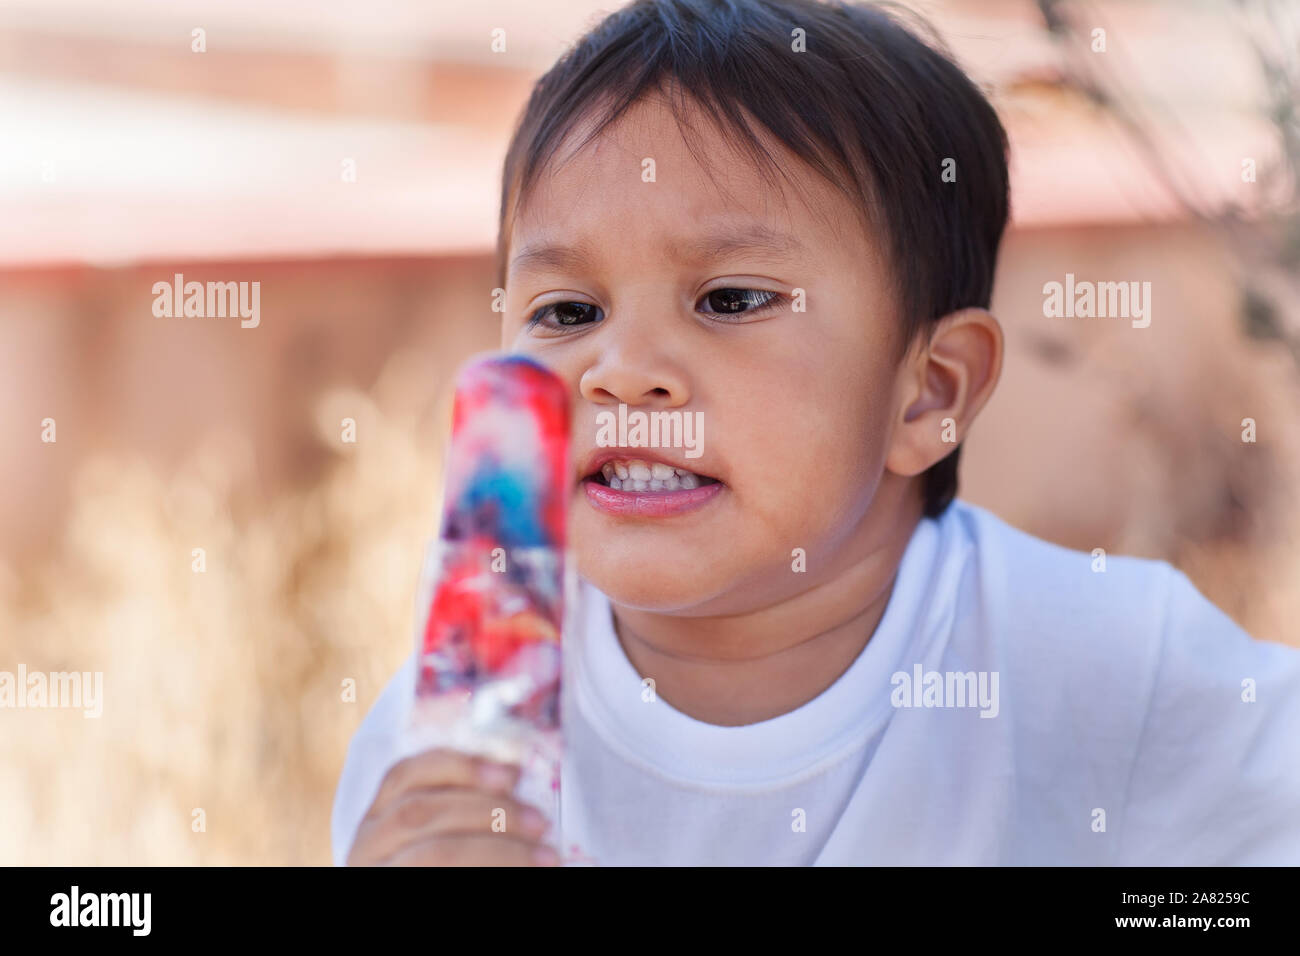 Ein Hispanic kleines Kind bereit, einen bunten Ice pop zu Essen bekommen. Stockfoto